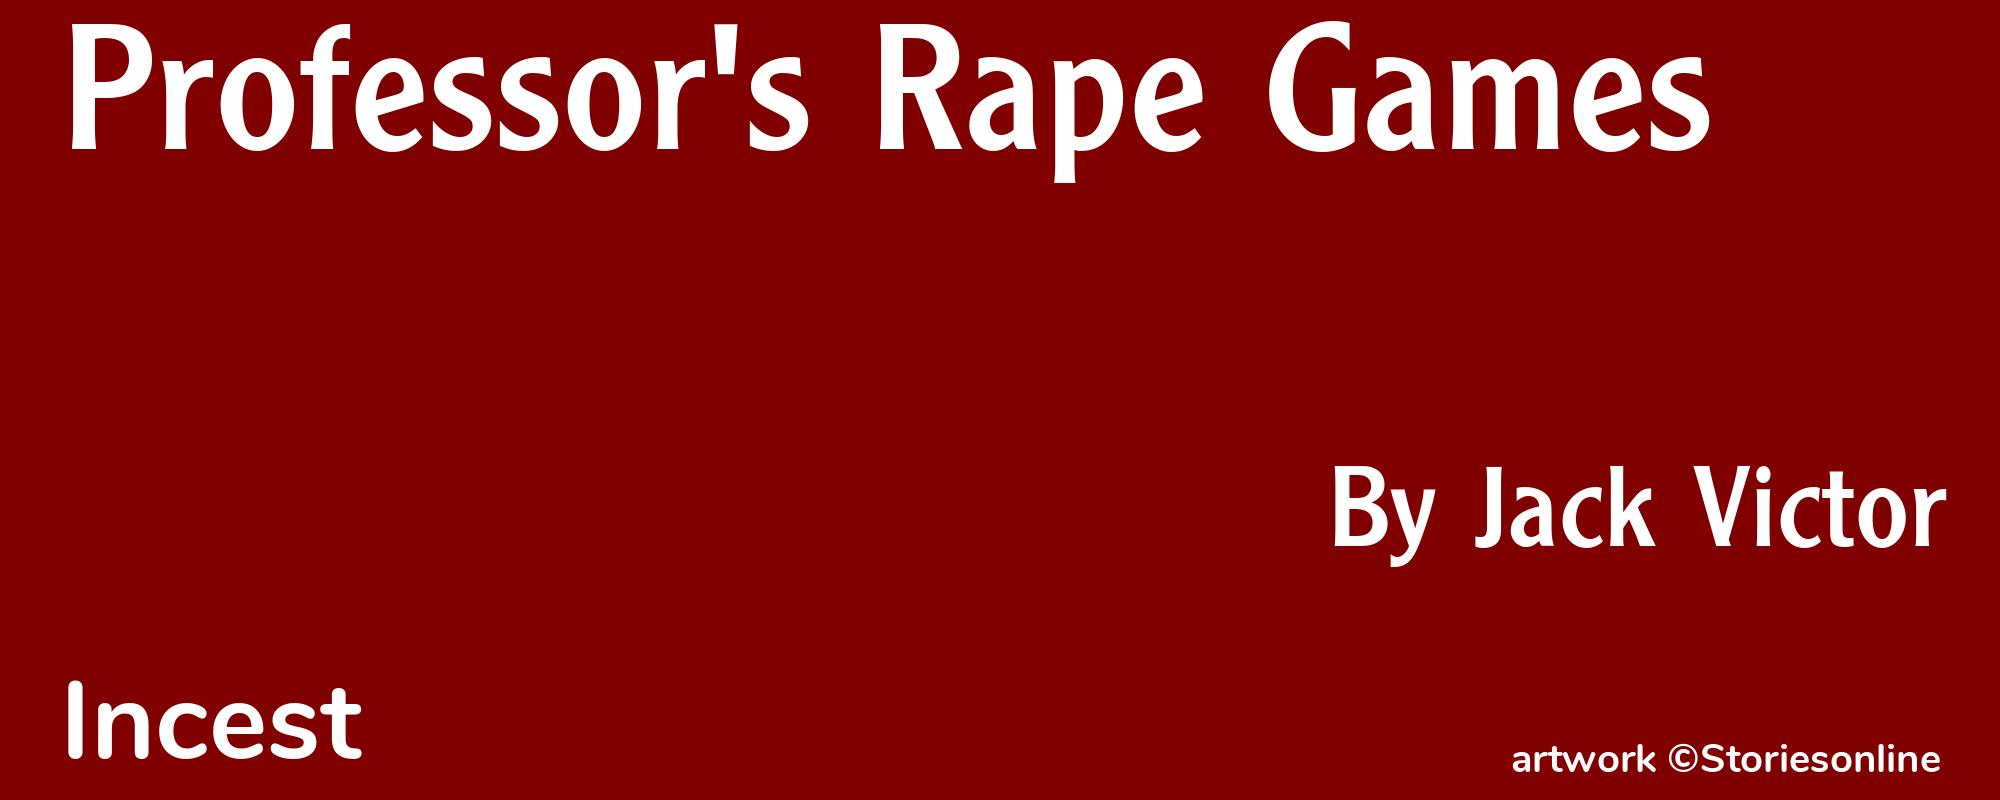 Professor's Rape Games - Cover